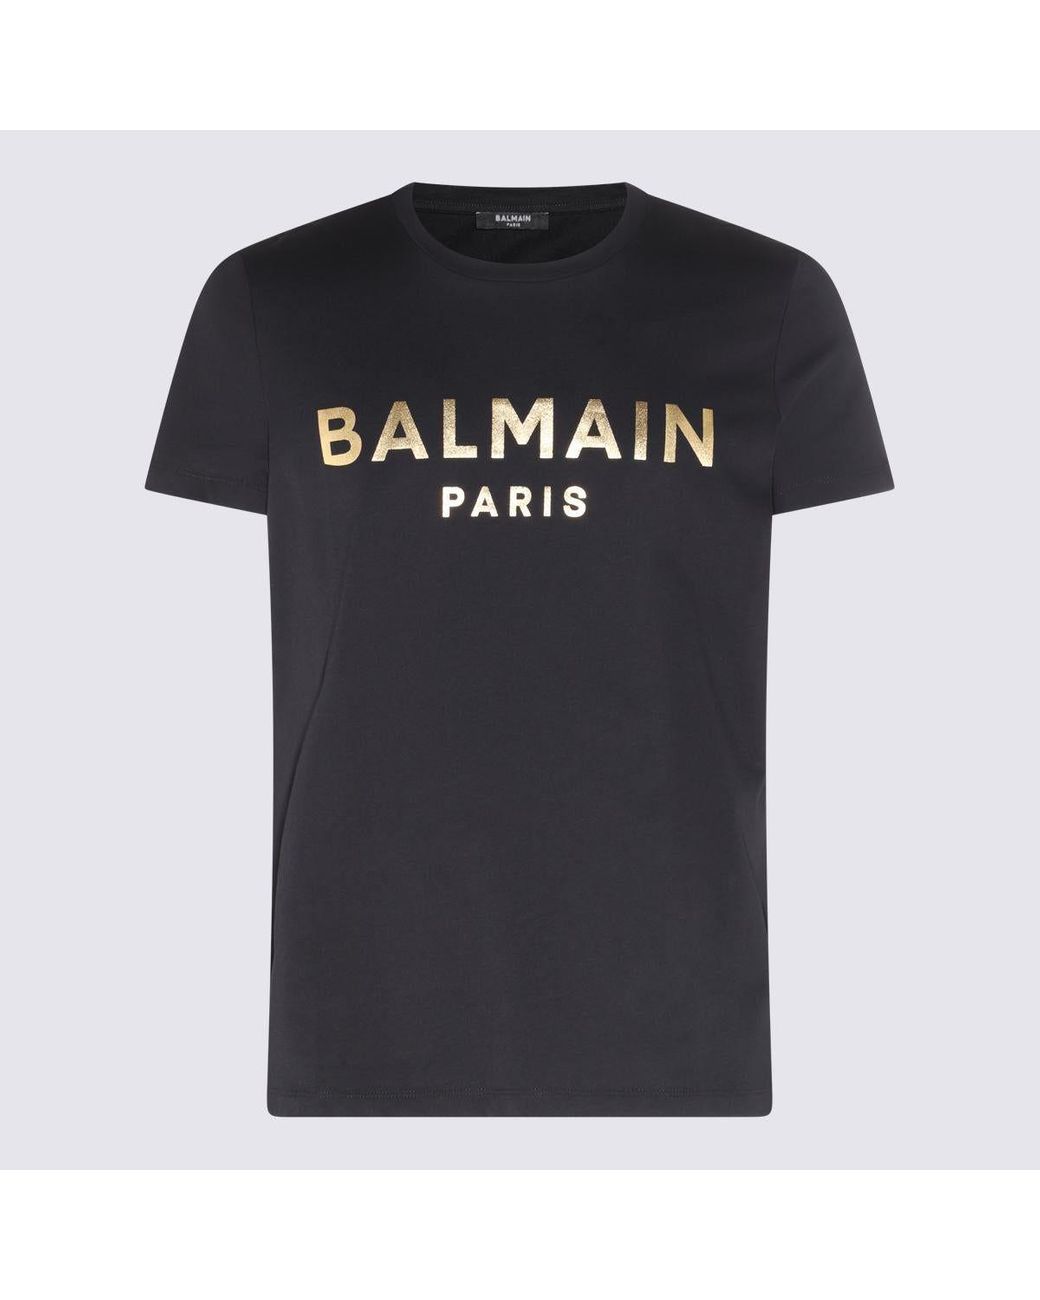 Regeneration tilfredshed hænge Balmain Black And Gold Cotton Logo T-shirt for Men | Lyst